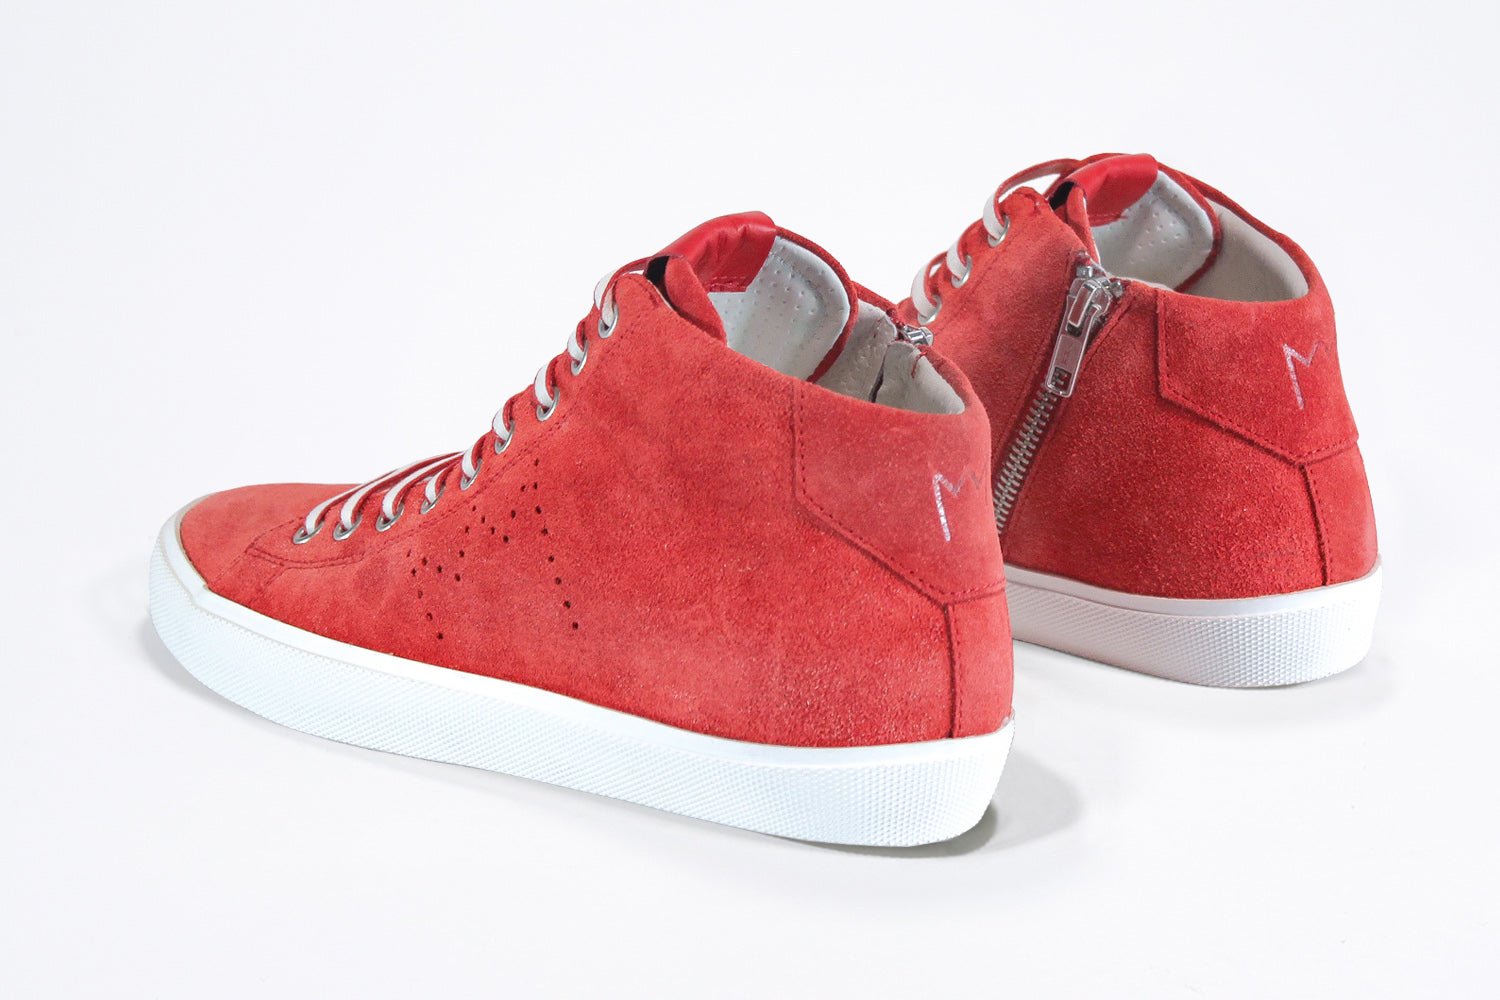  Vue de trois quarts arrière de la chaussure de sport sneaker en daim rouge et cuir, avec fermeture éclair interne et semelle blanche.